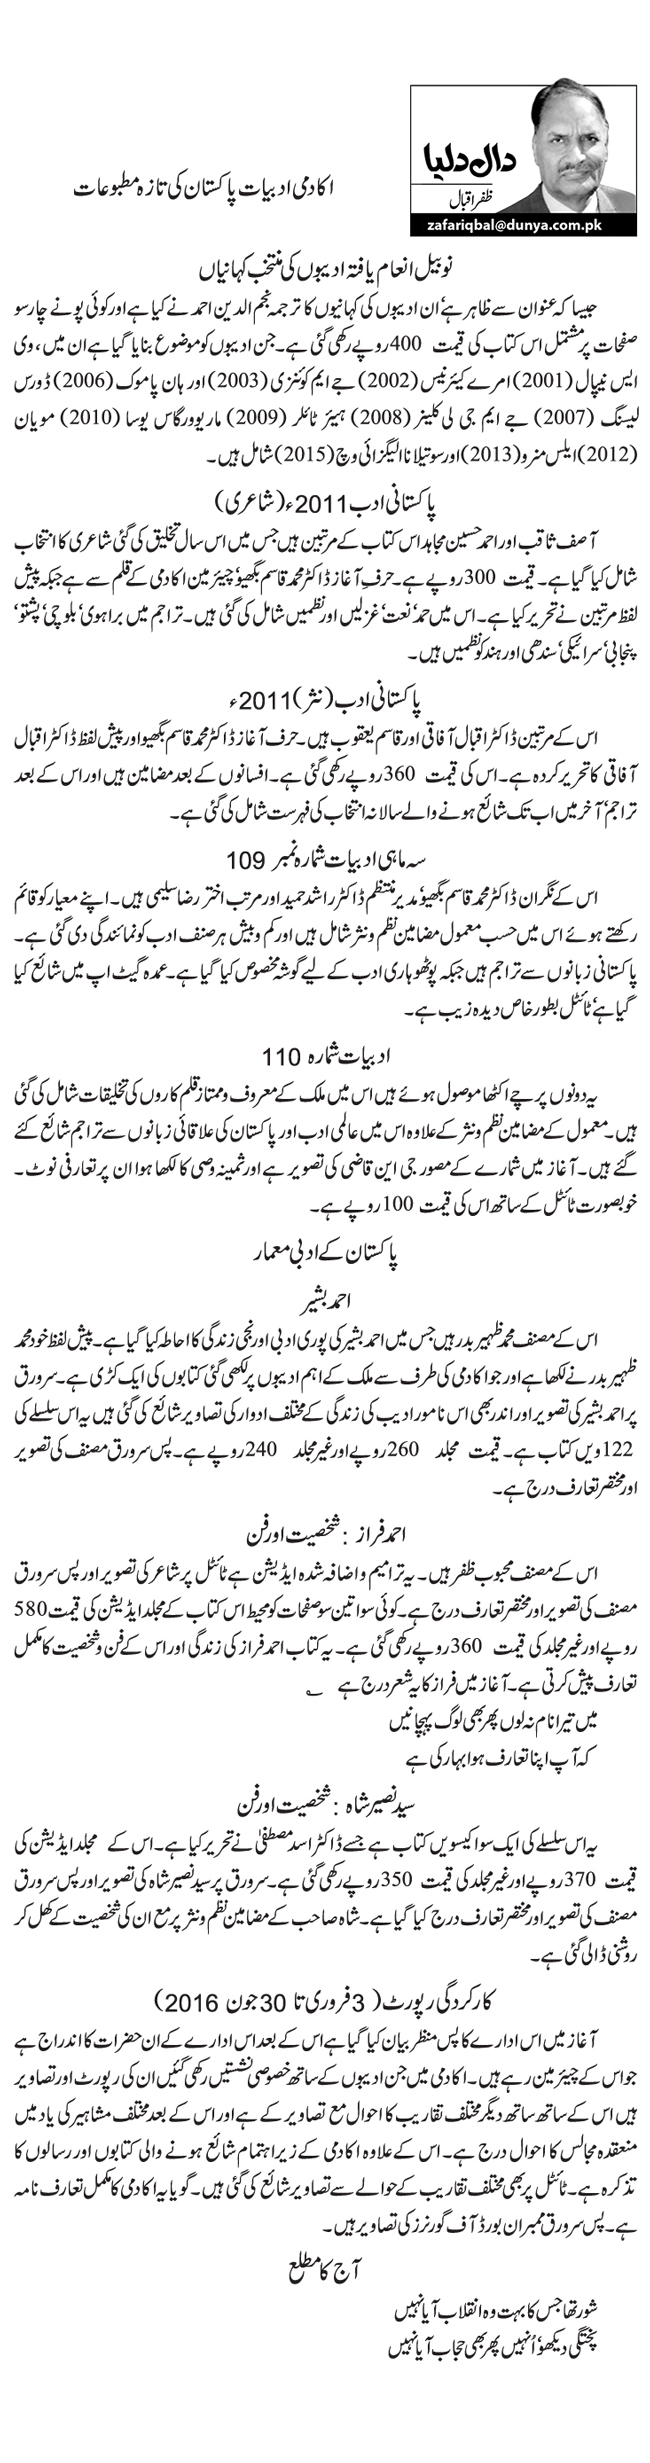 اکادمی ادبیات پاکستان کی تازہ مطبوعات  